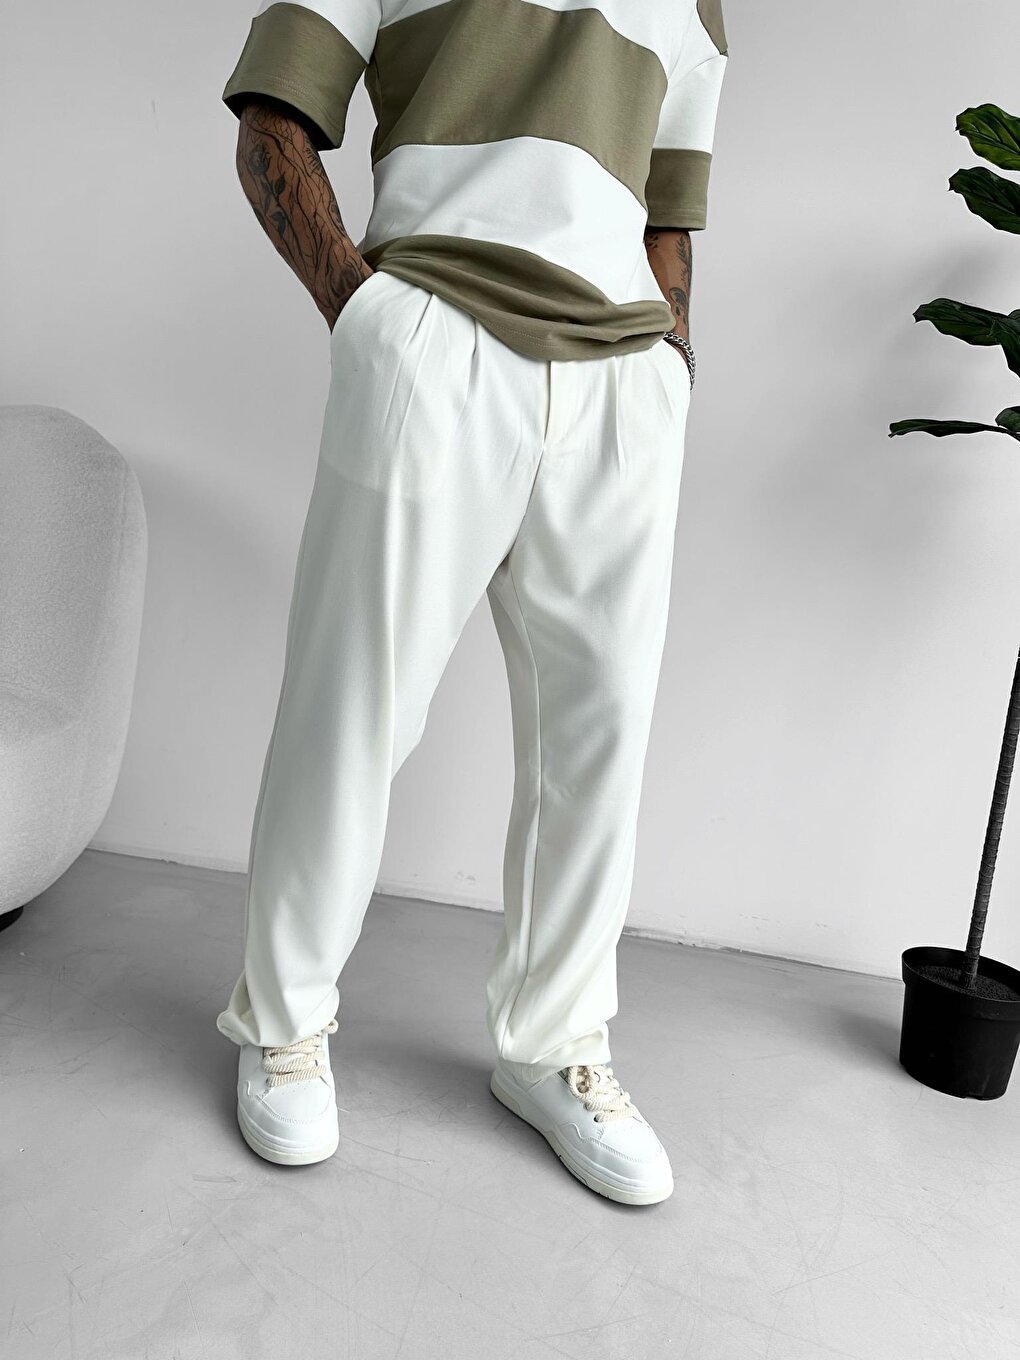 Тканевые брюки мешковатого кроя, белые ablukaonline цена и фото